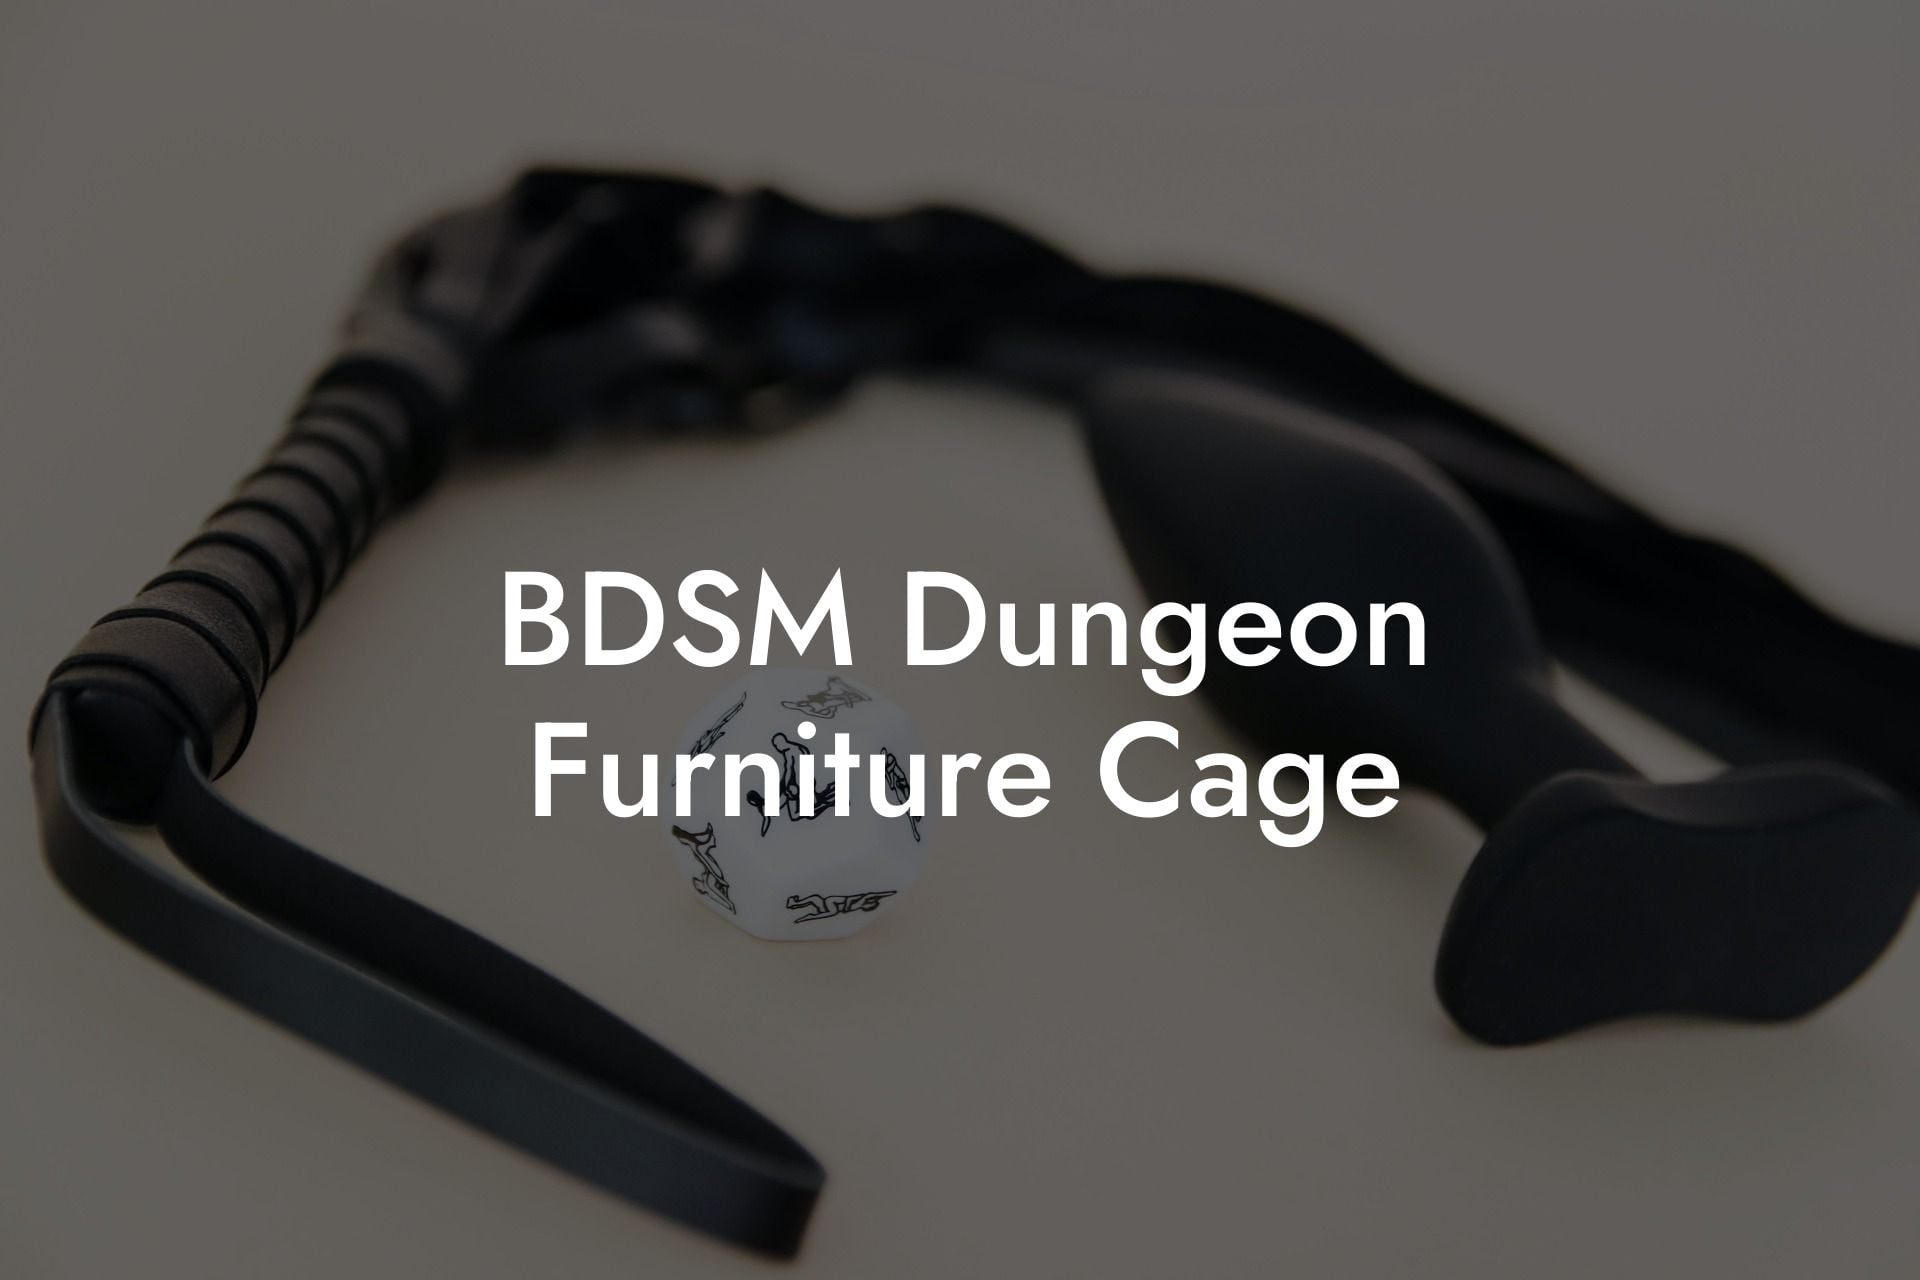 BDSM Dungeon Furniture Cage